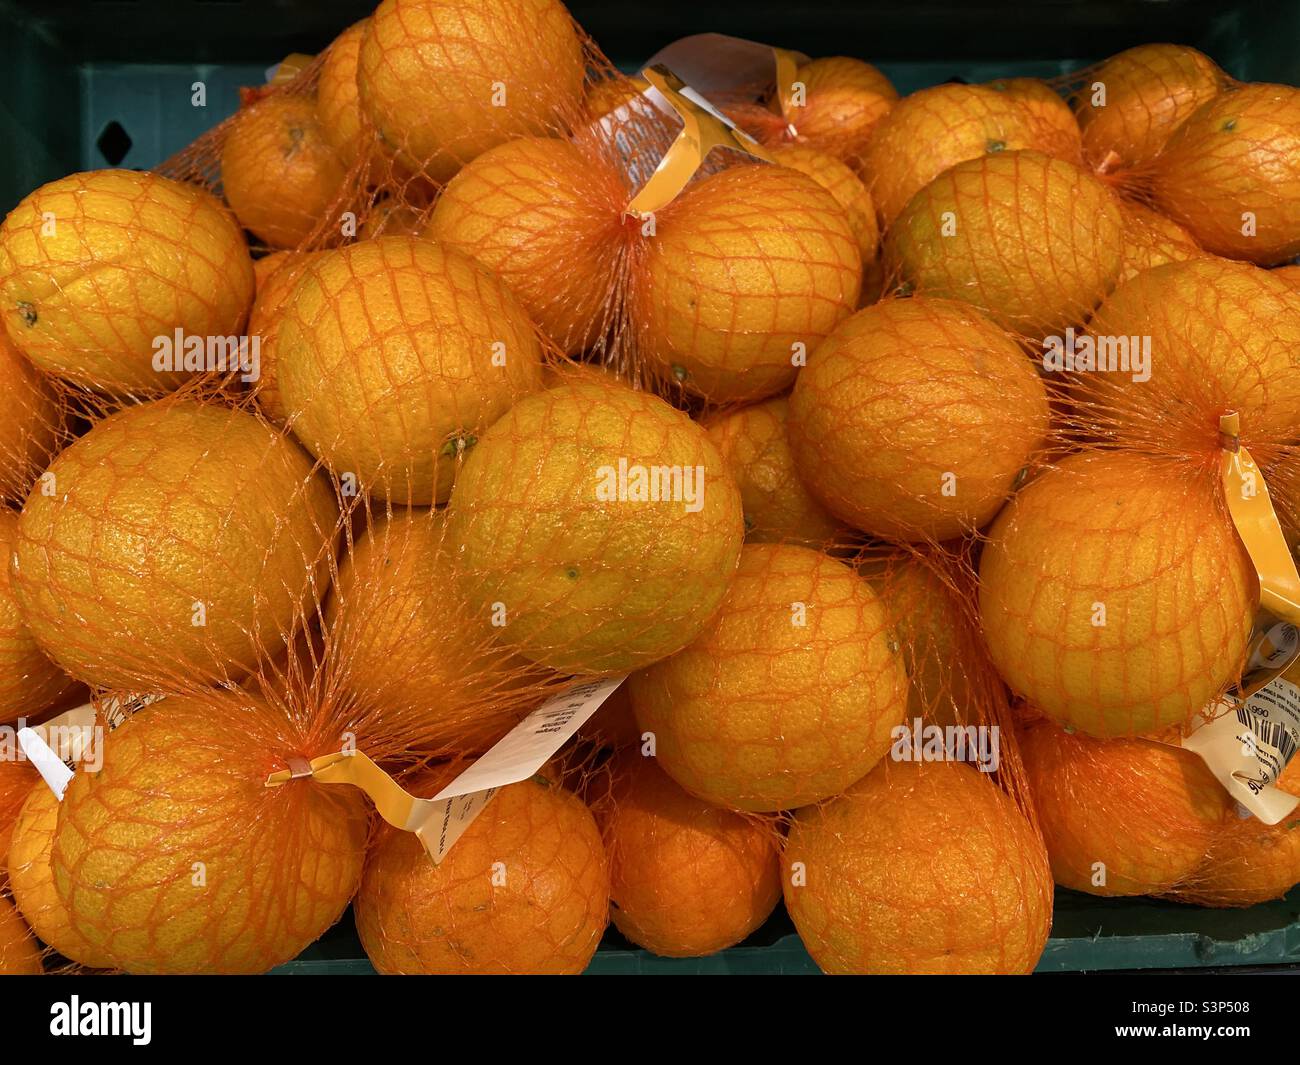 https://c8.alamy.com/comp/S3P508/bags-of-fresh-oranges-S3P508.jpg